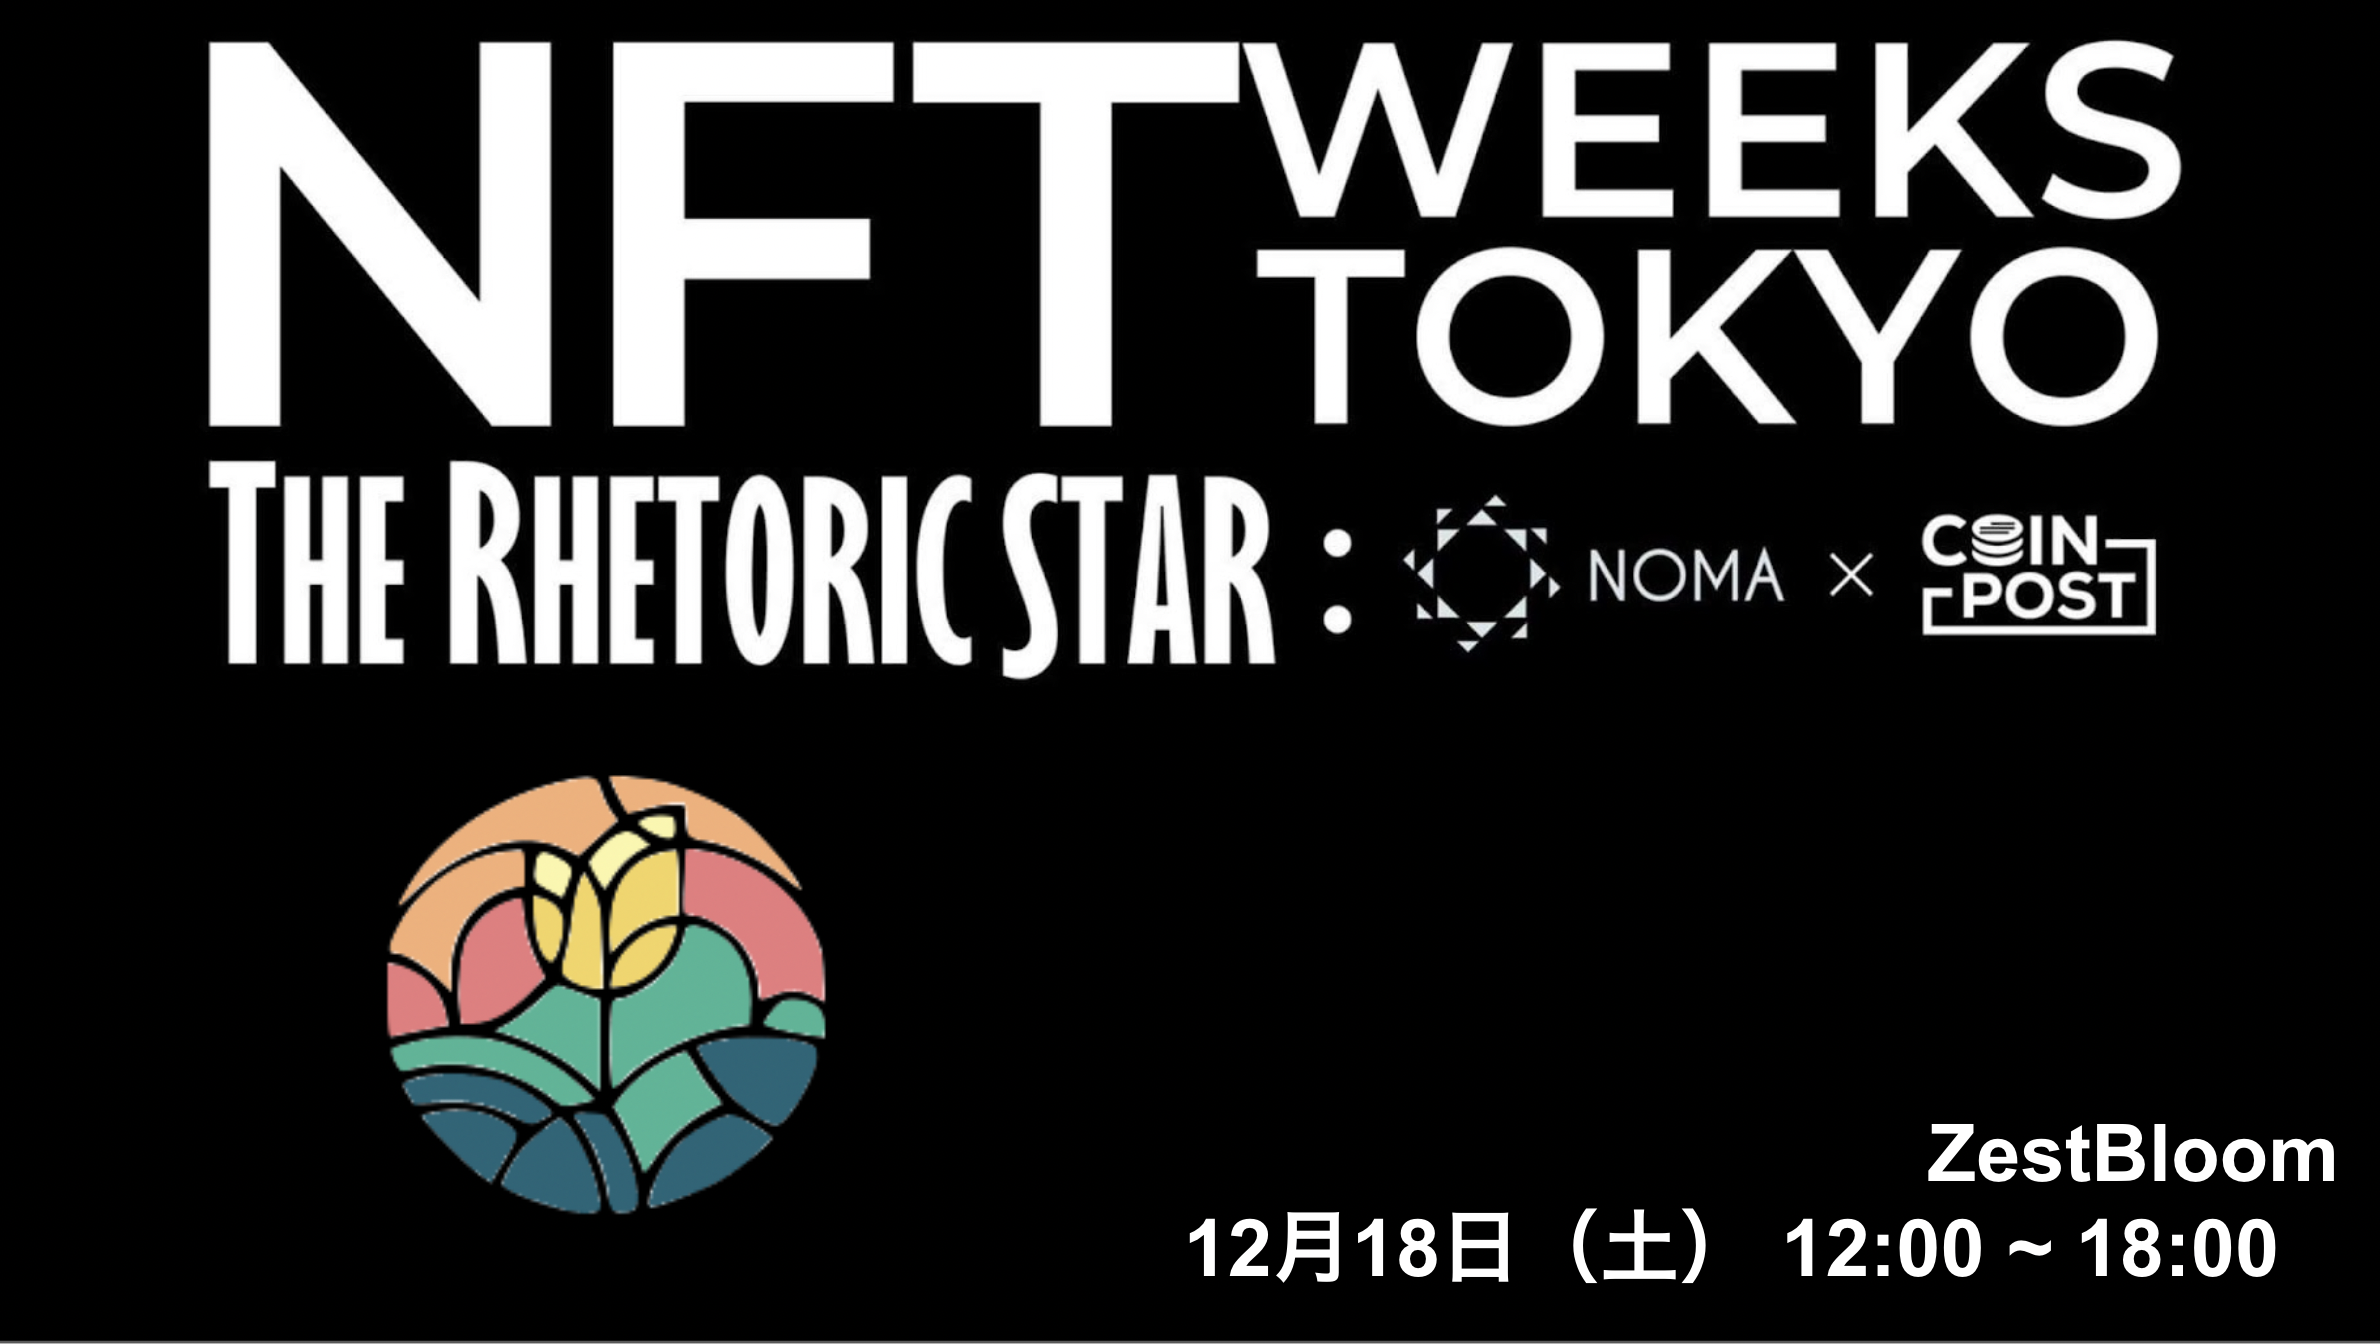 デジタルコンテンツマーケットプレイスZestBloom、「NFT WEEKS TOKYO（銀座）」へ18日に出展のサブ画像1